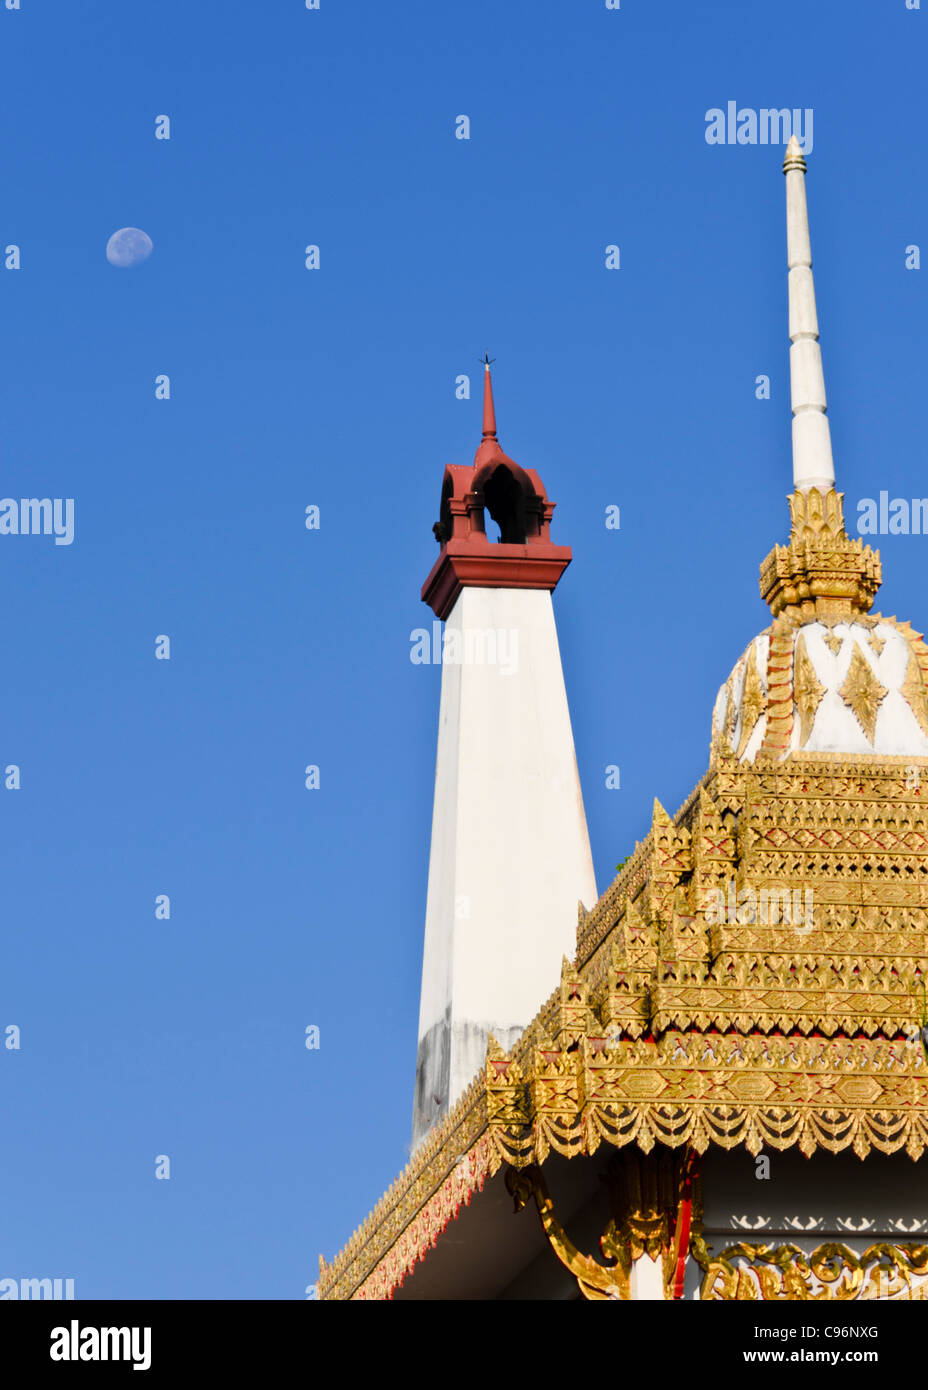 Crématorium bouddhiste avec des capacités d'or avec spire & blanc cheminée avec la lune dans ciel bleu clair dans le nord de la Thaïlande Banque D'Images